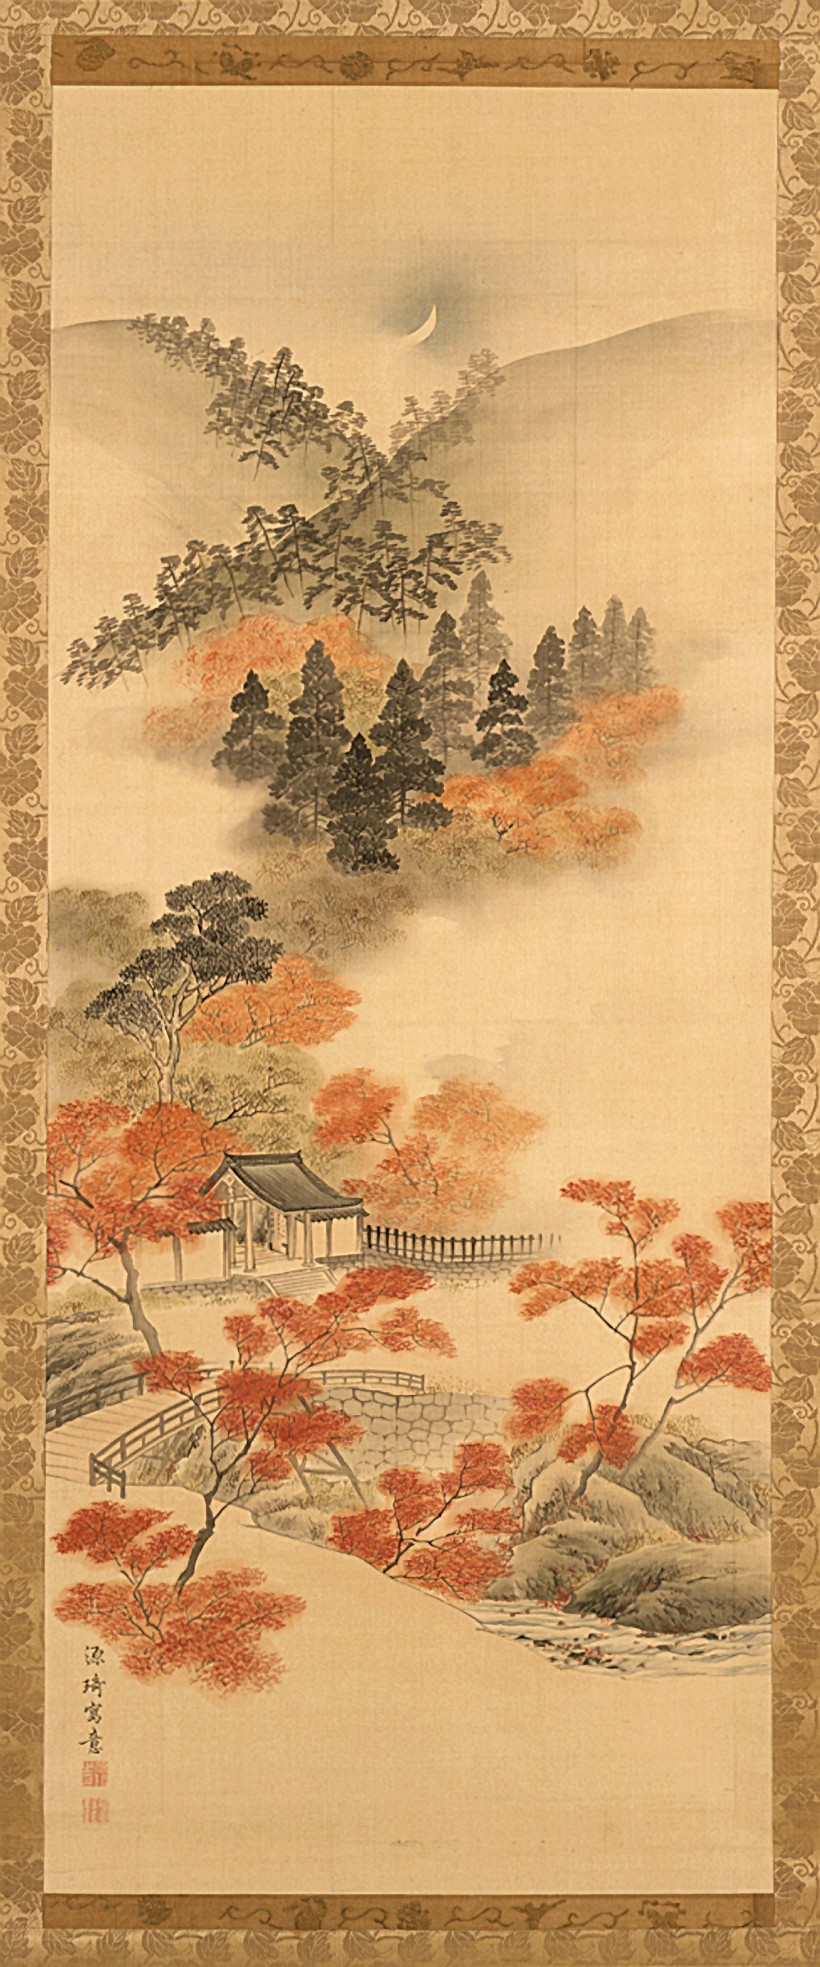 Image: Genki (Komai Ki), Snow, Moon, and Flowers: Maples at Takao, 18th century